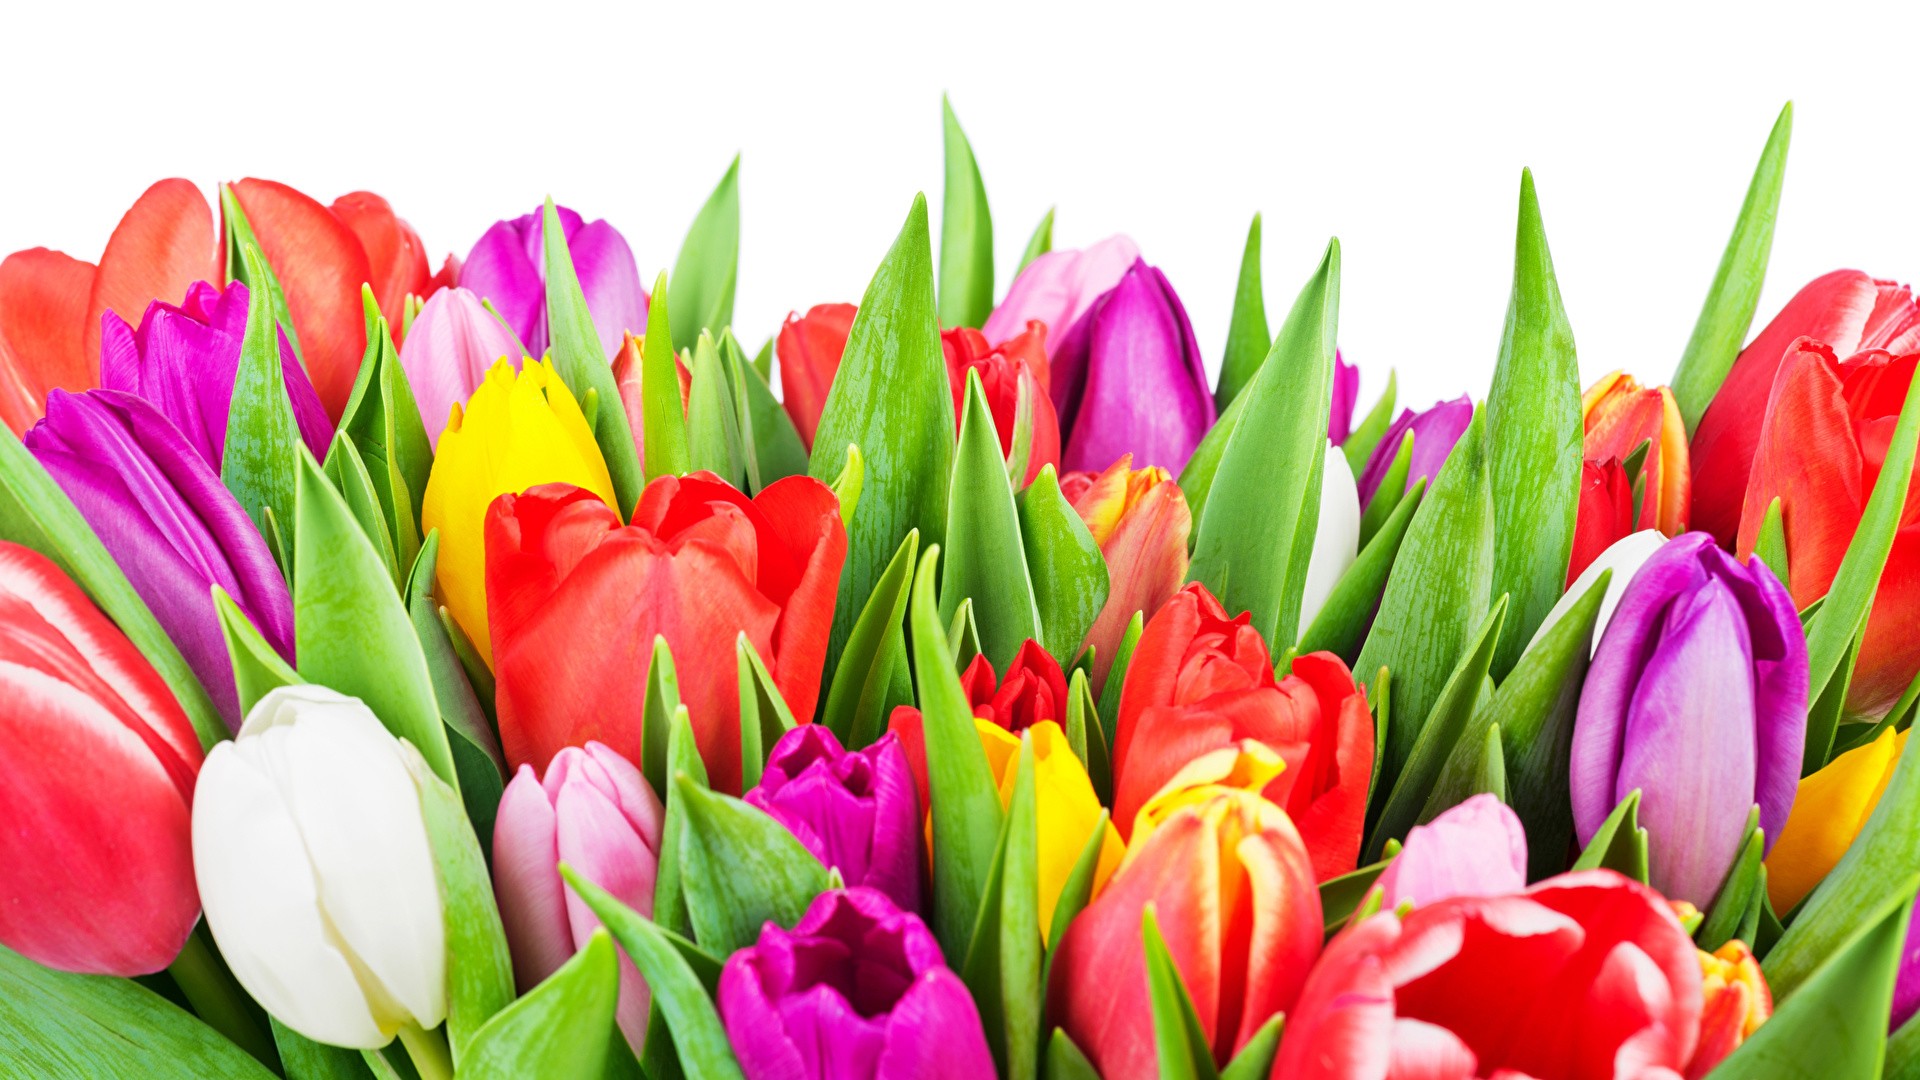 International Women's Day Flowers desktop image